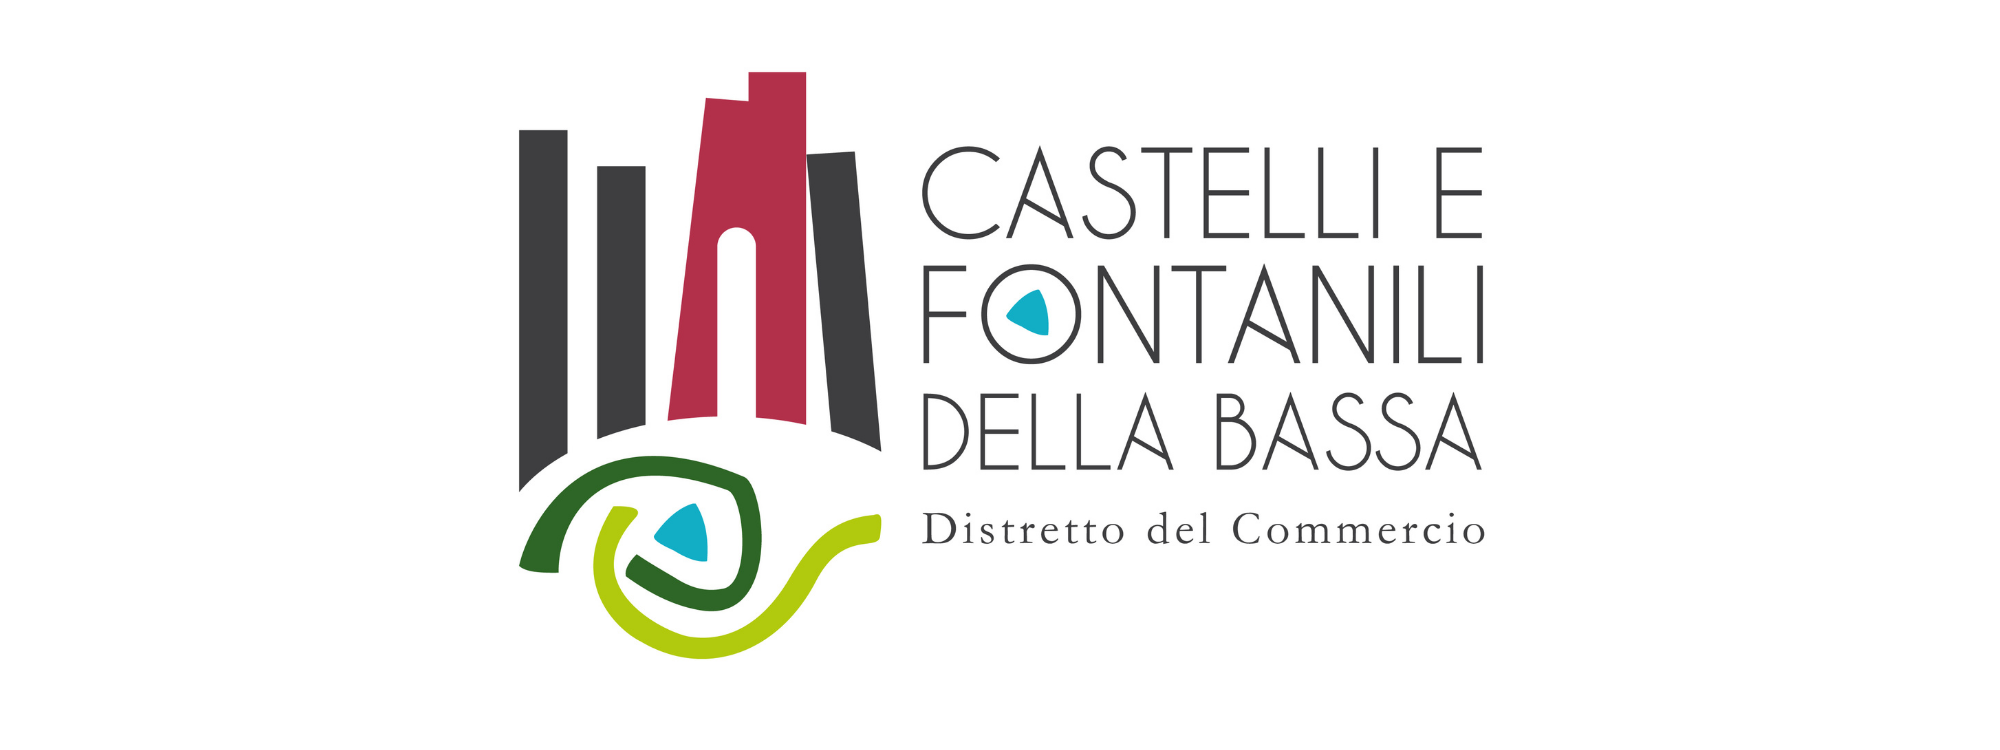 Distretto del Commercio – Castelli e Fontanili della Bassa